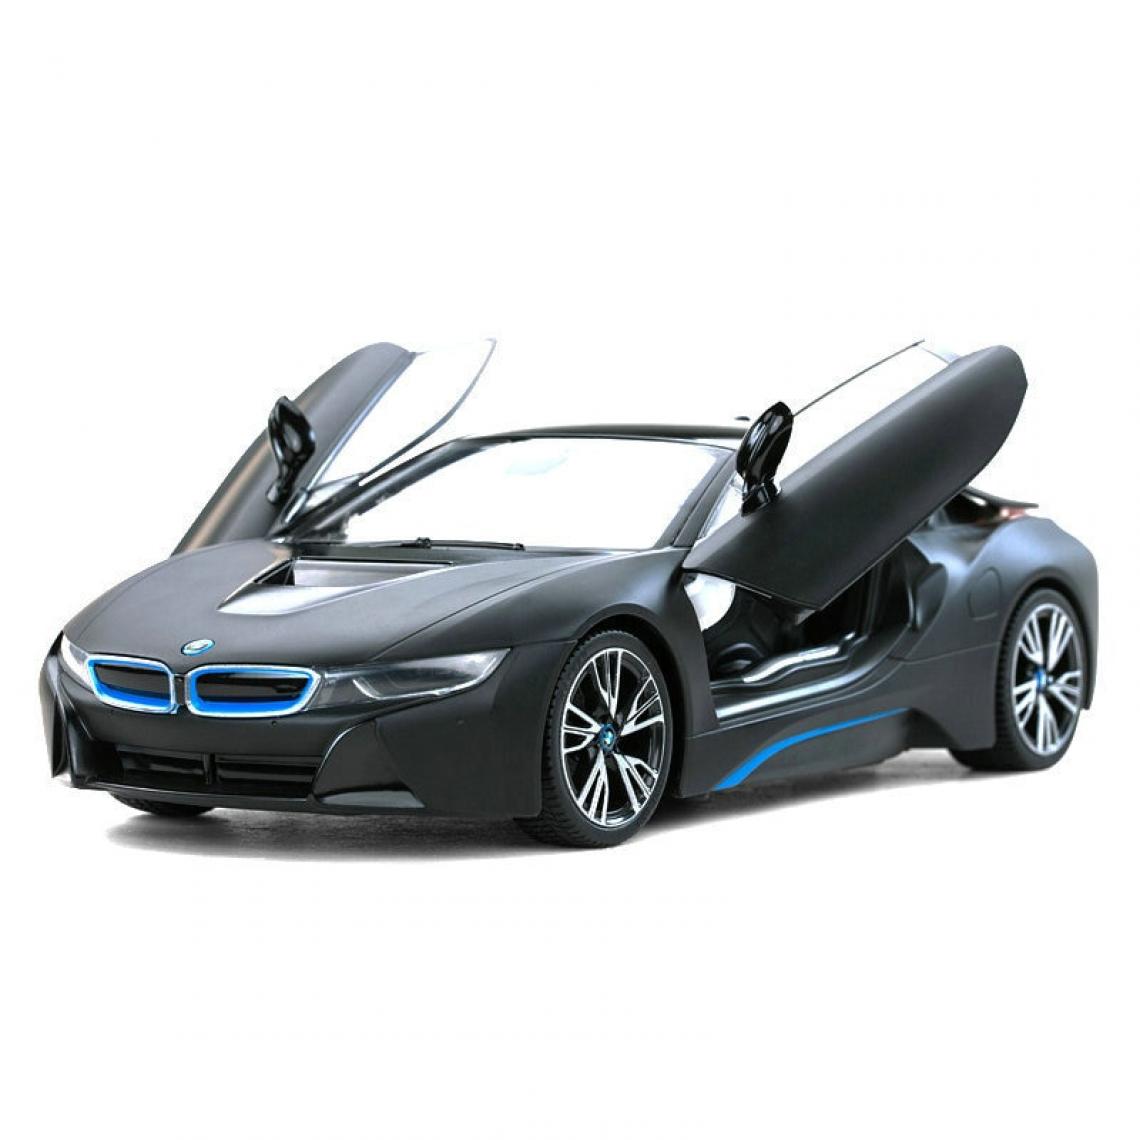 Universal - RMZ City BMW i8 Concept 1: 24 Véhicule métallique Moulé sous pression Retour à traction Modèle Jouet Collection Cadeau de Noël | Voiture jouet moulée sous pression (Noir) - Voitures